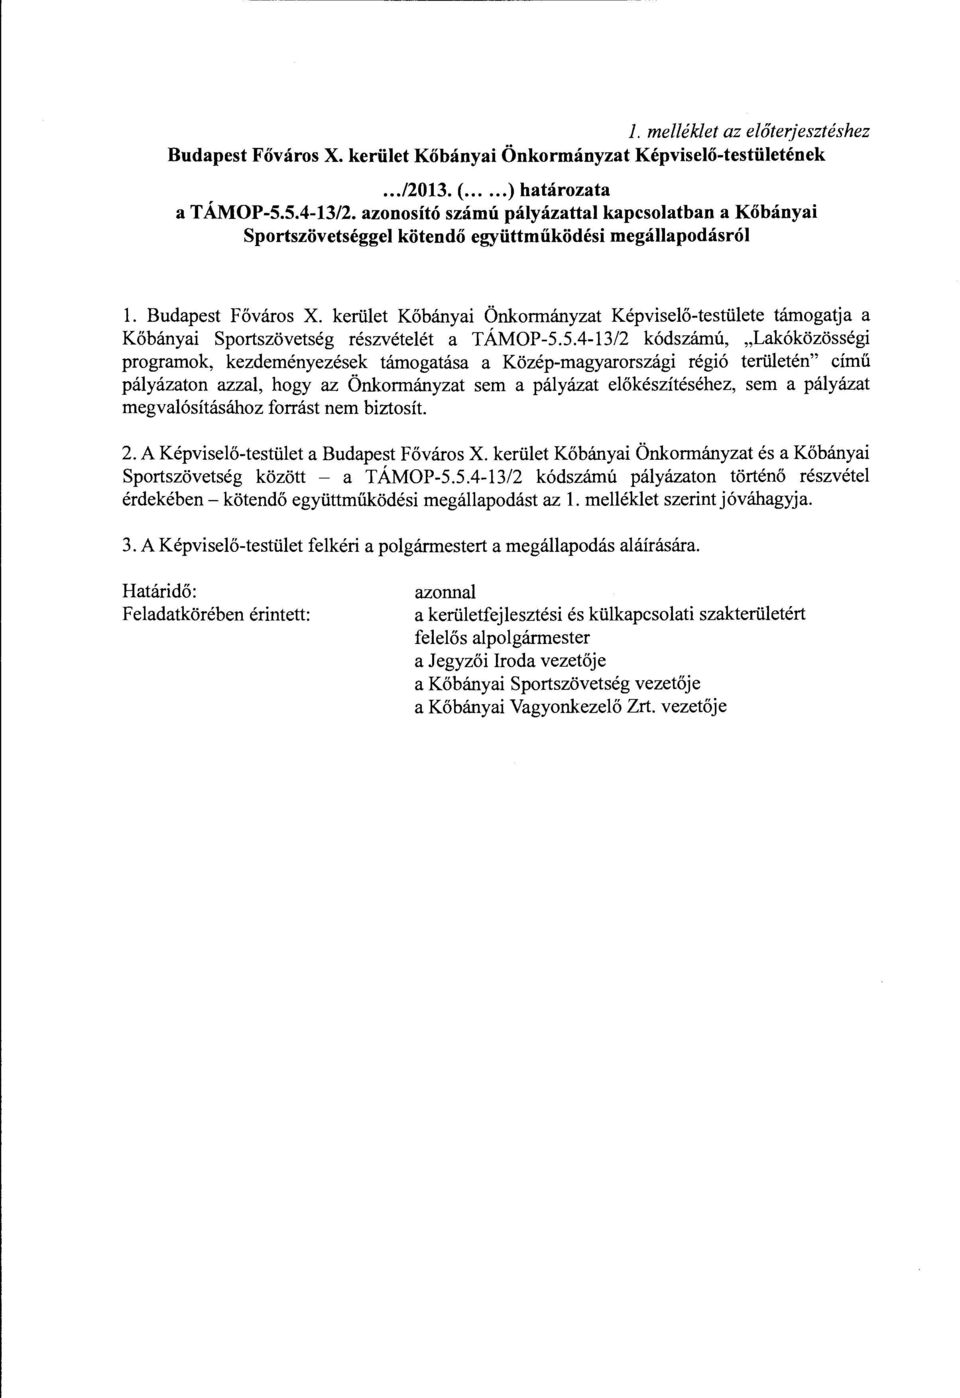 kerület Kőbányai Önkormányzat Képviselő-testülete támogatja a Kőbányai Sportszövetség részvételét a TÁMOP-5.